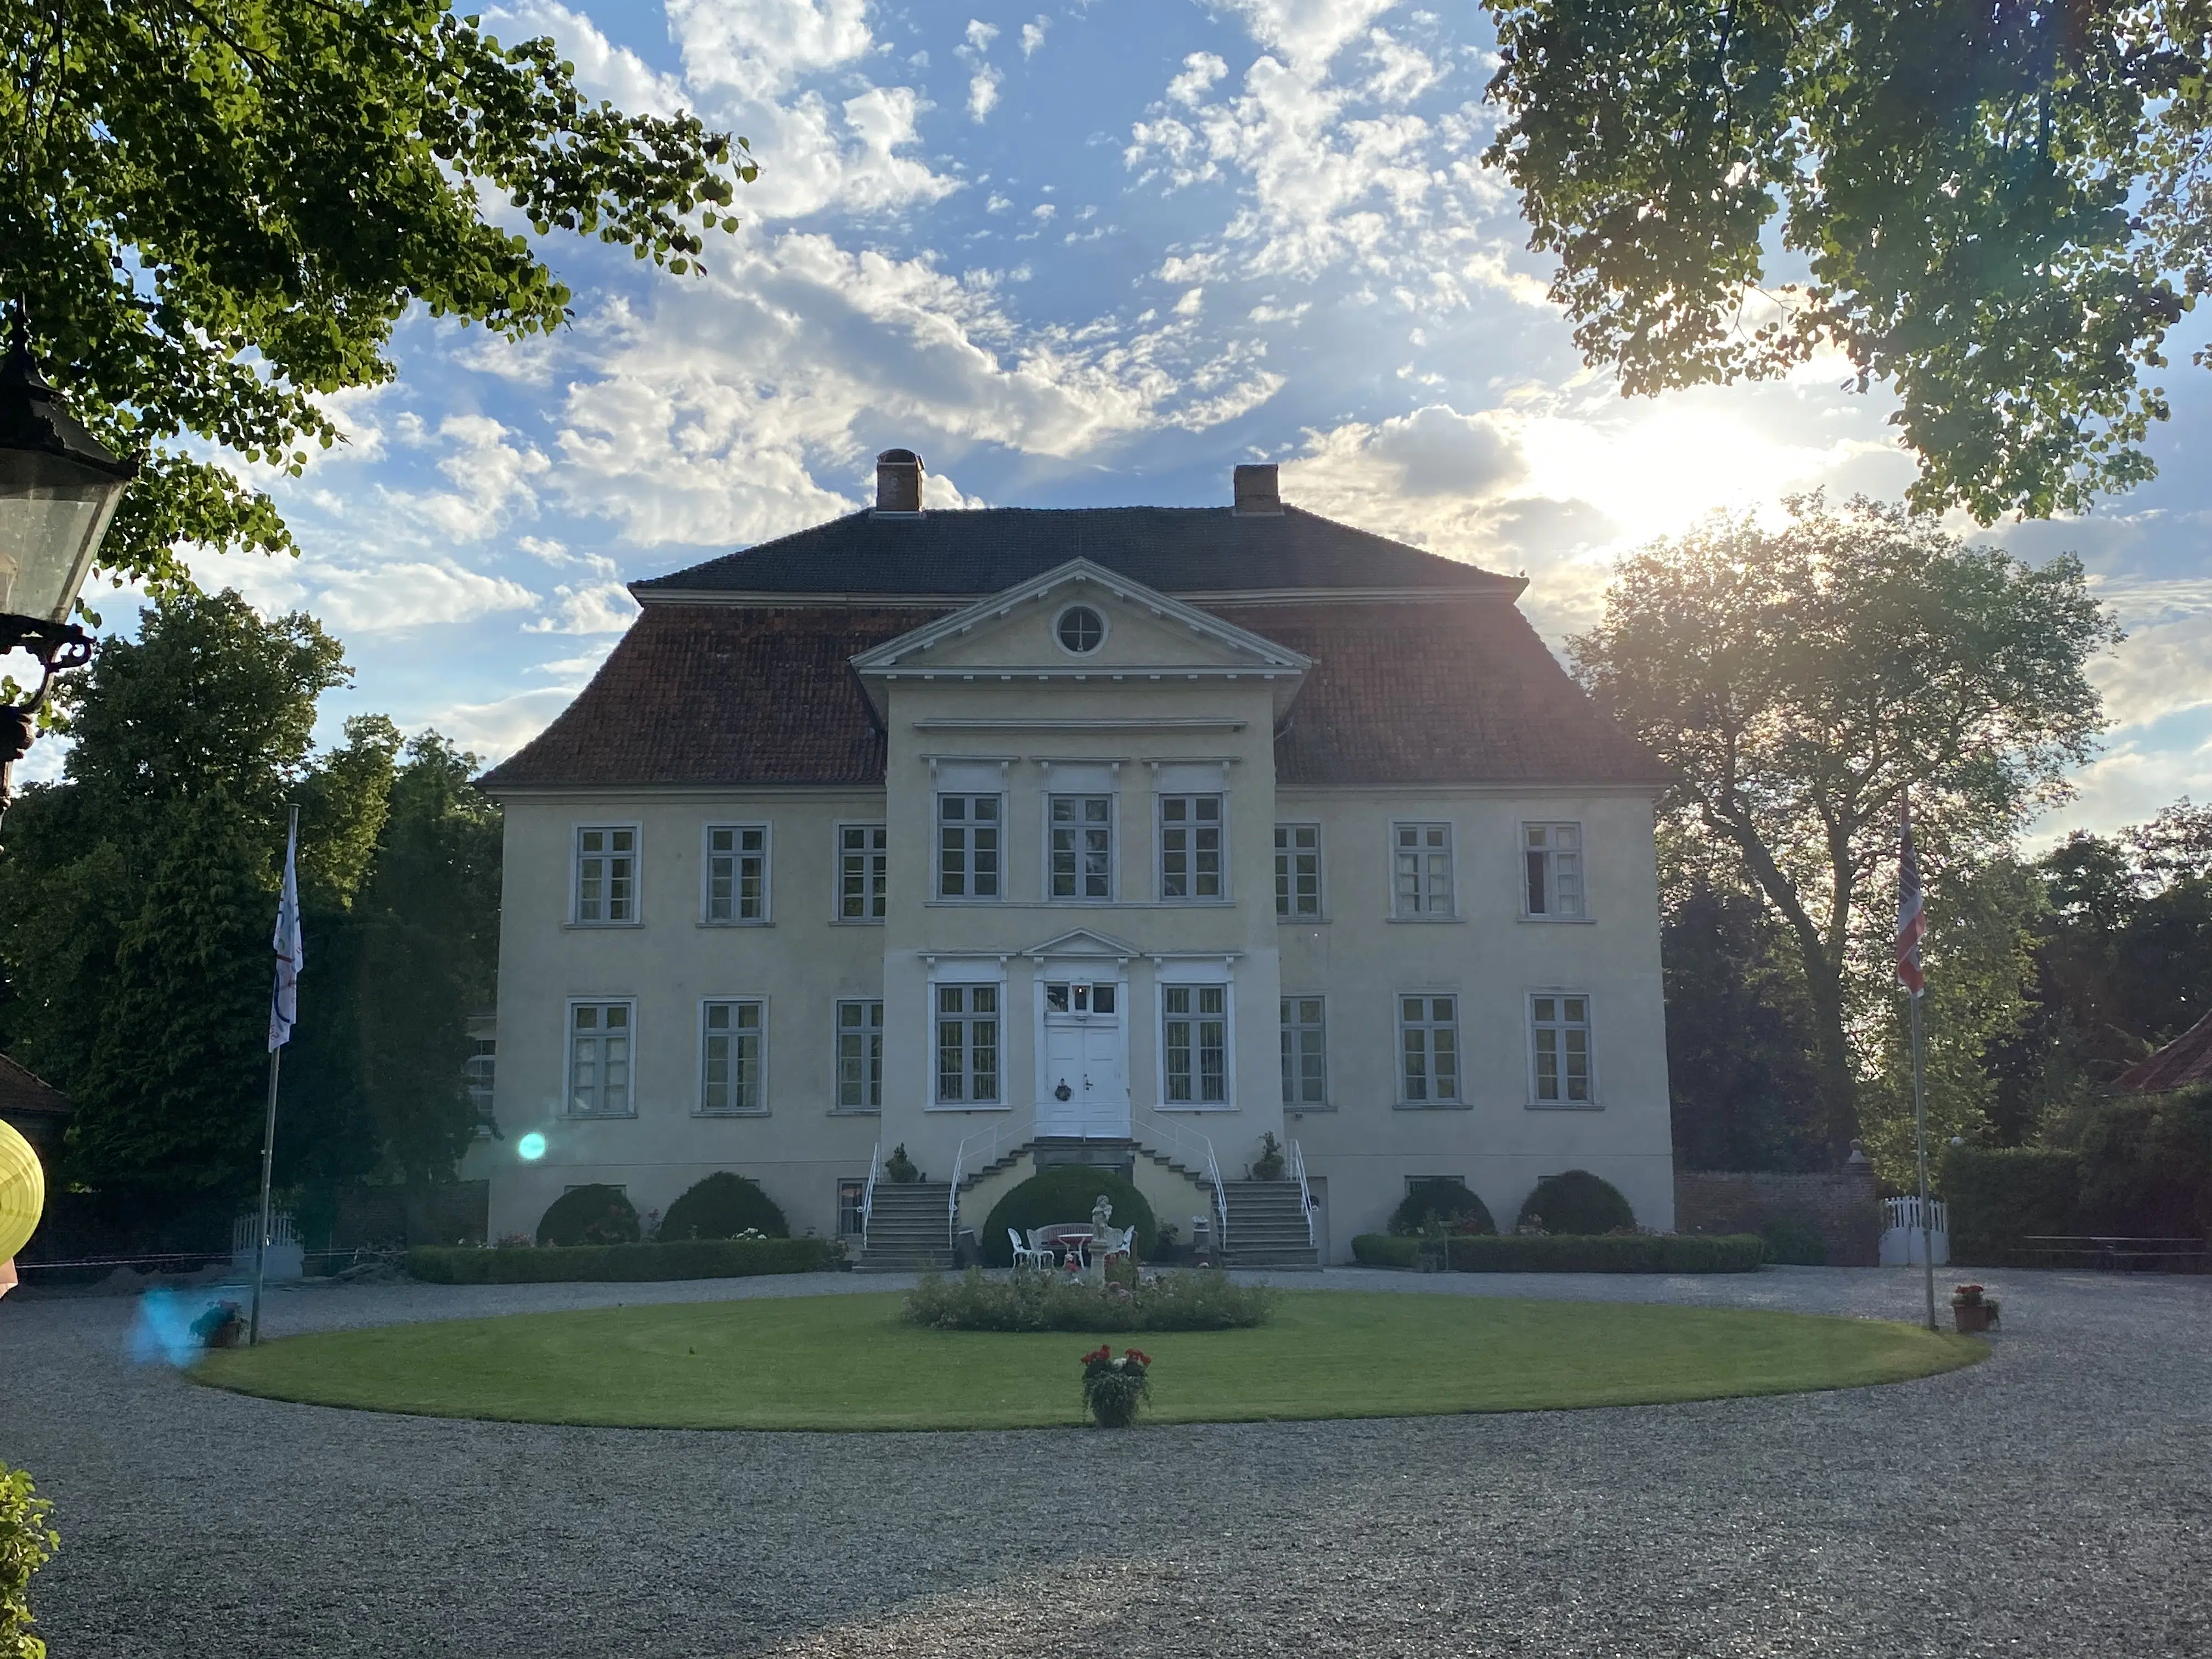 Hasselburg Herrenhaus scaled